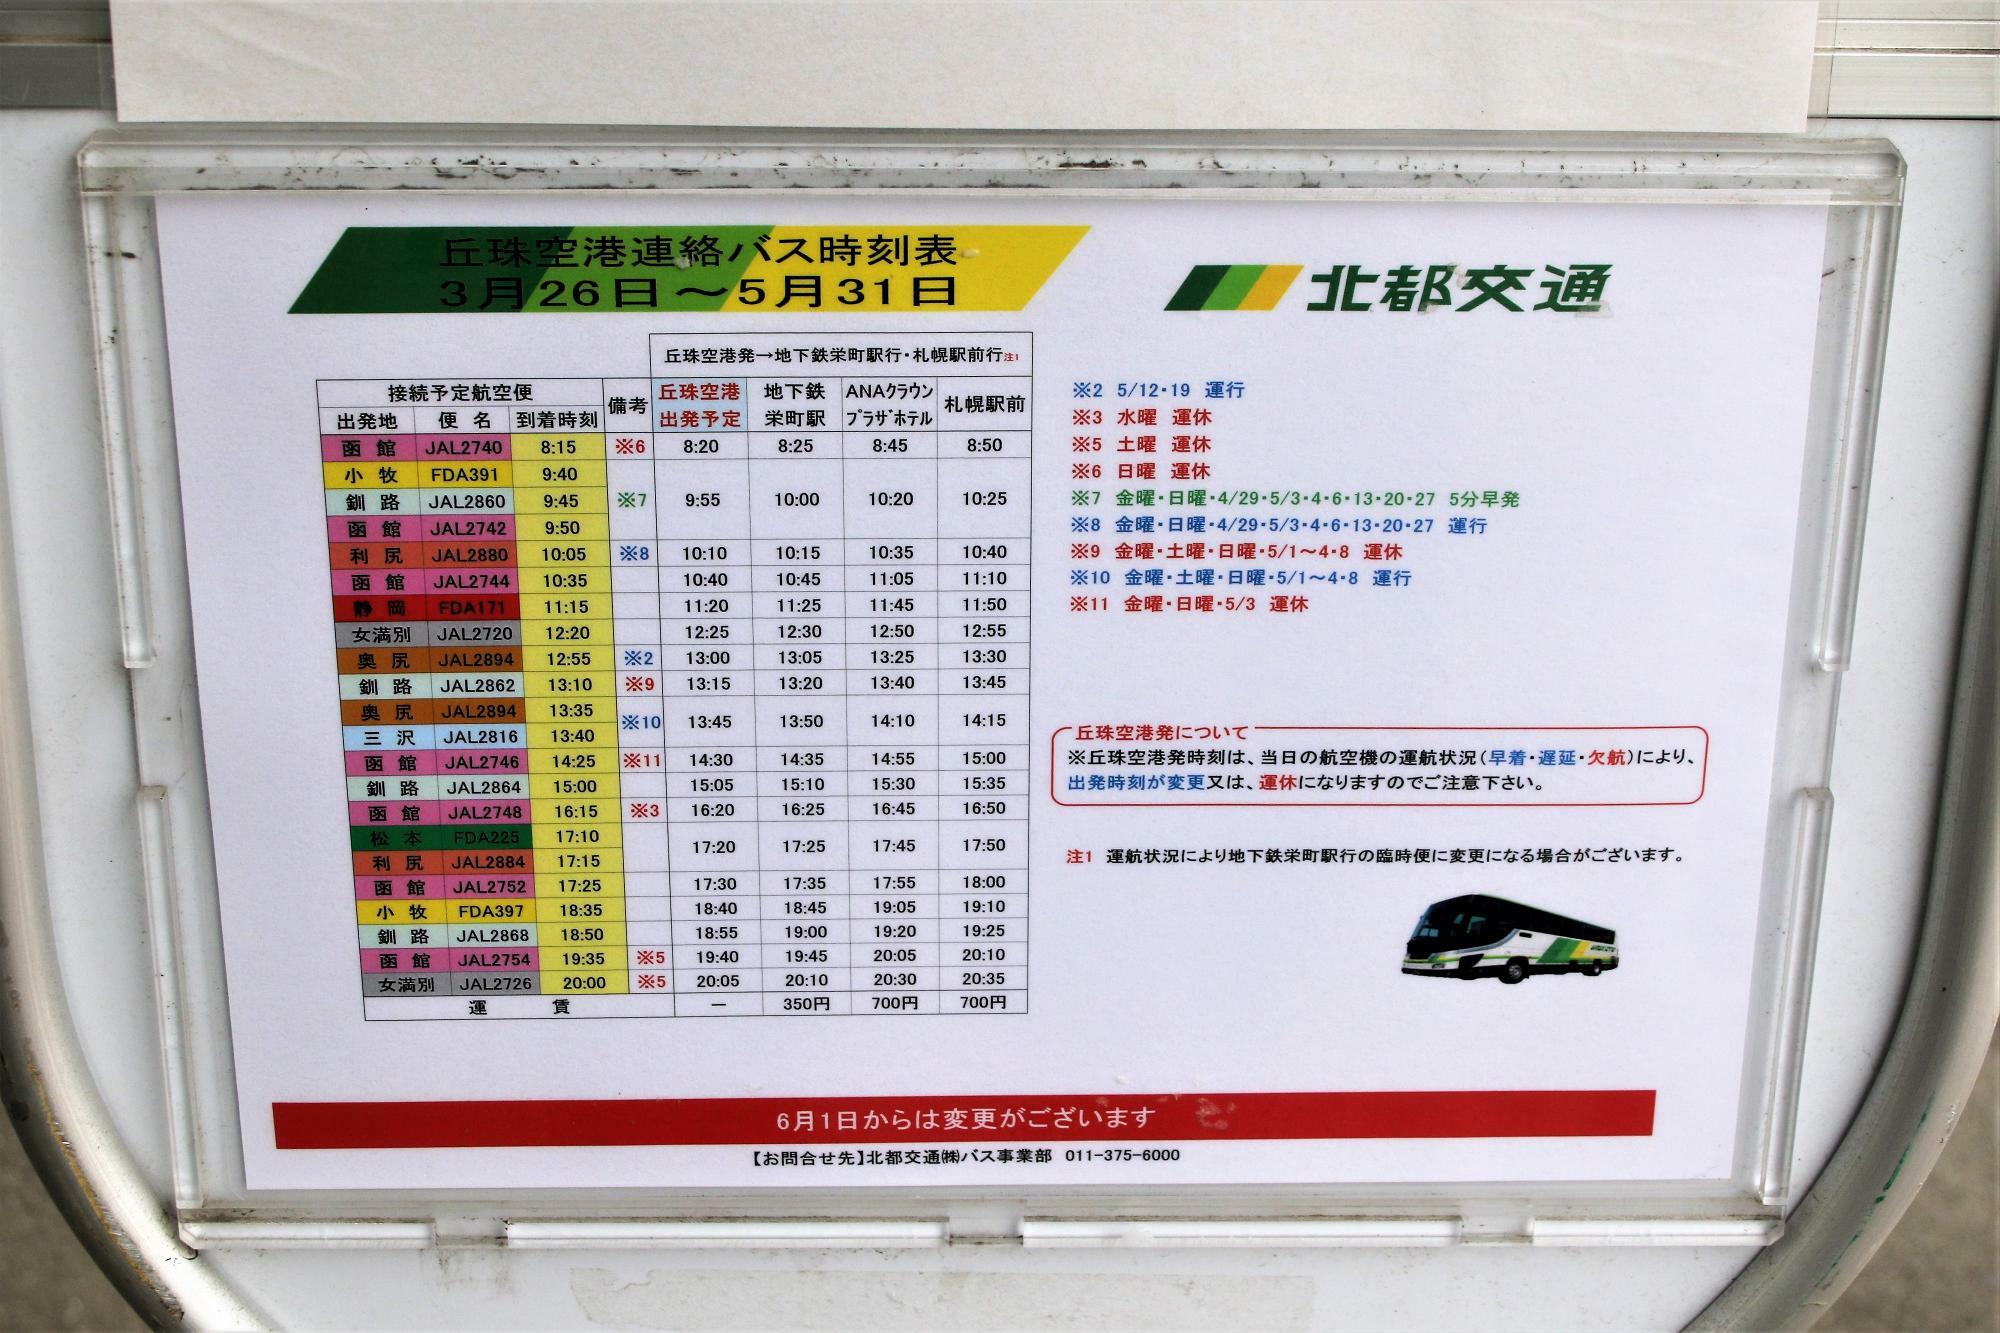 札幌丘珠空港到着口前にあるバス停時刻表